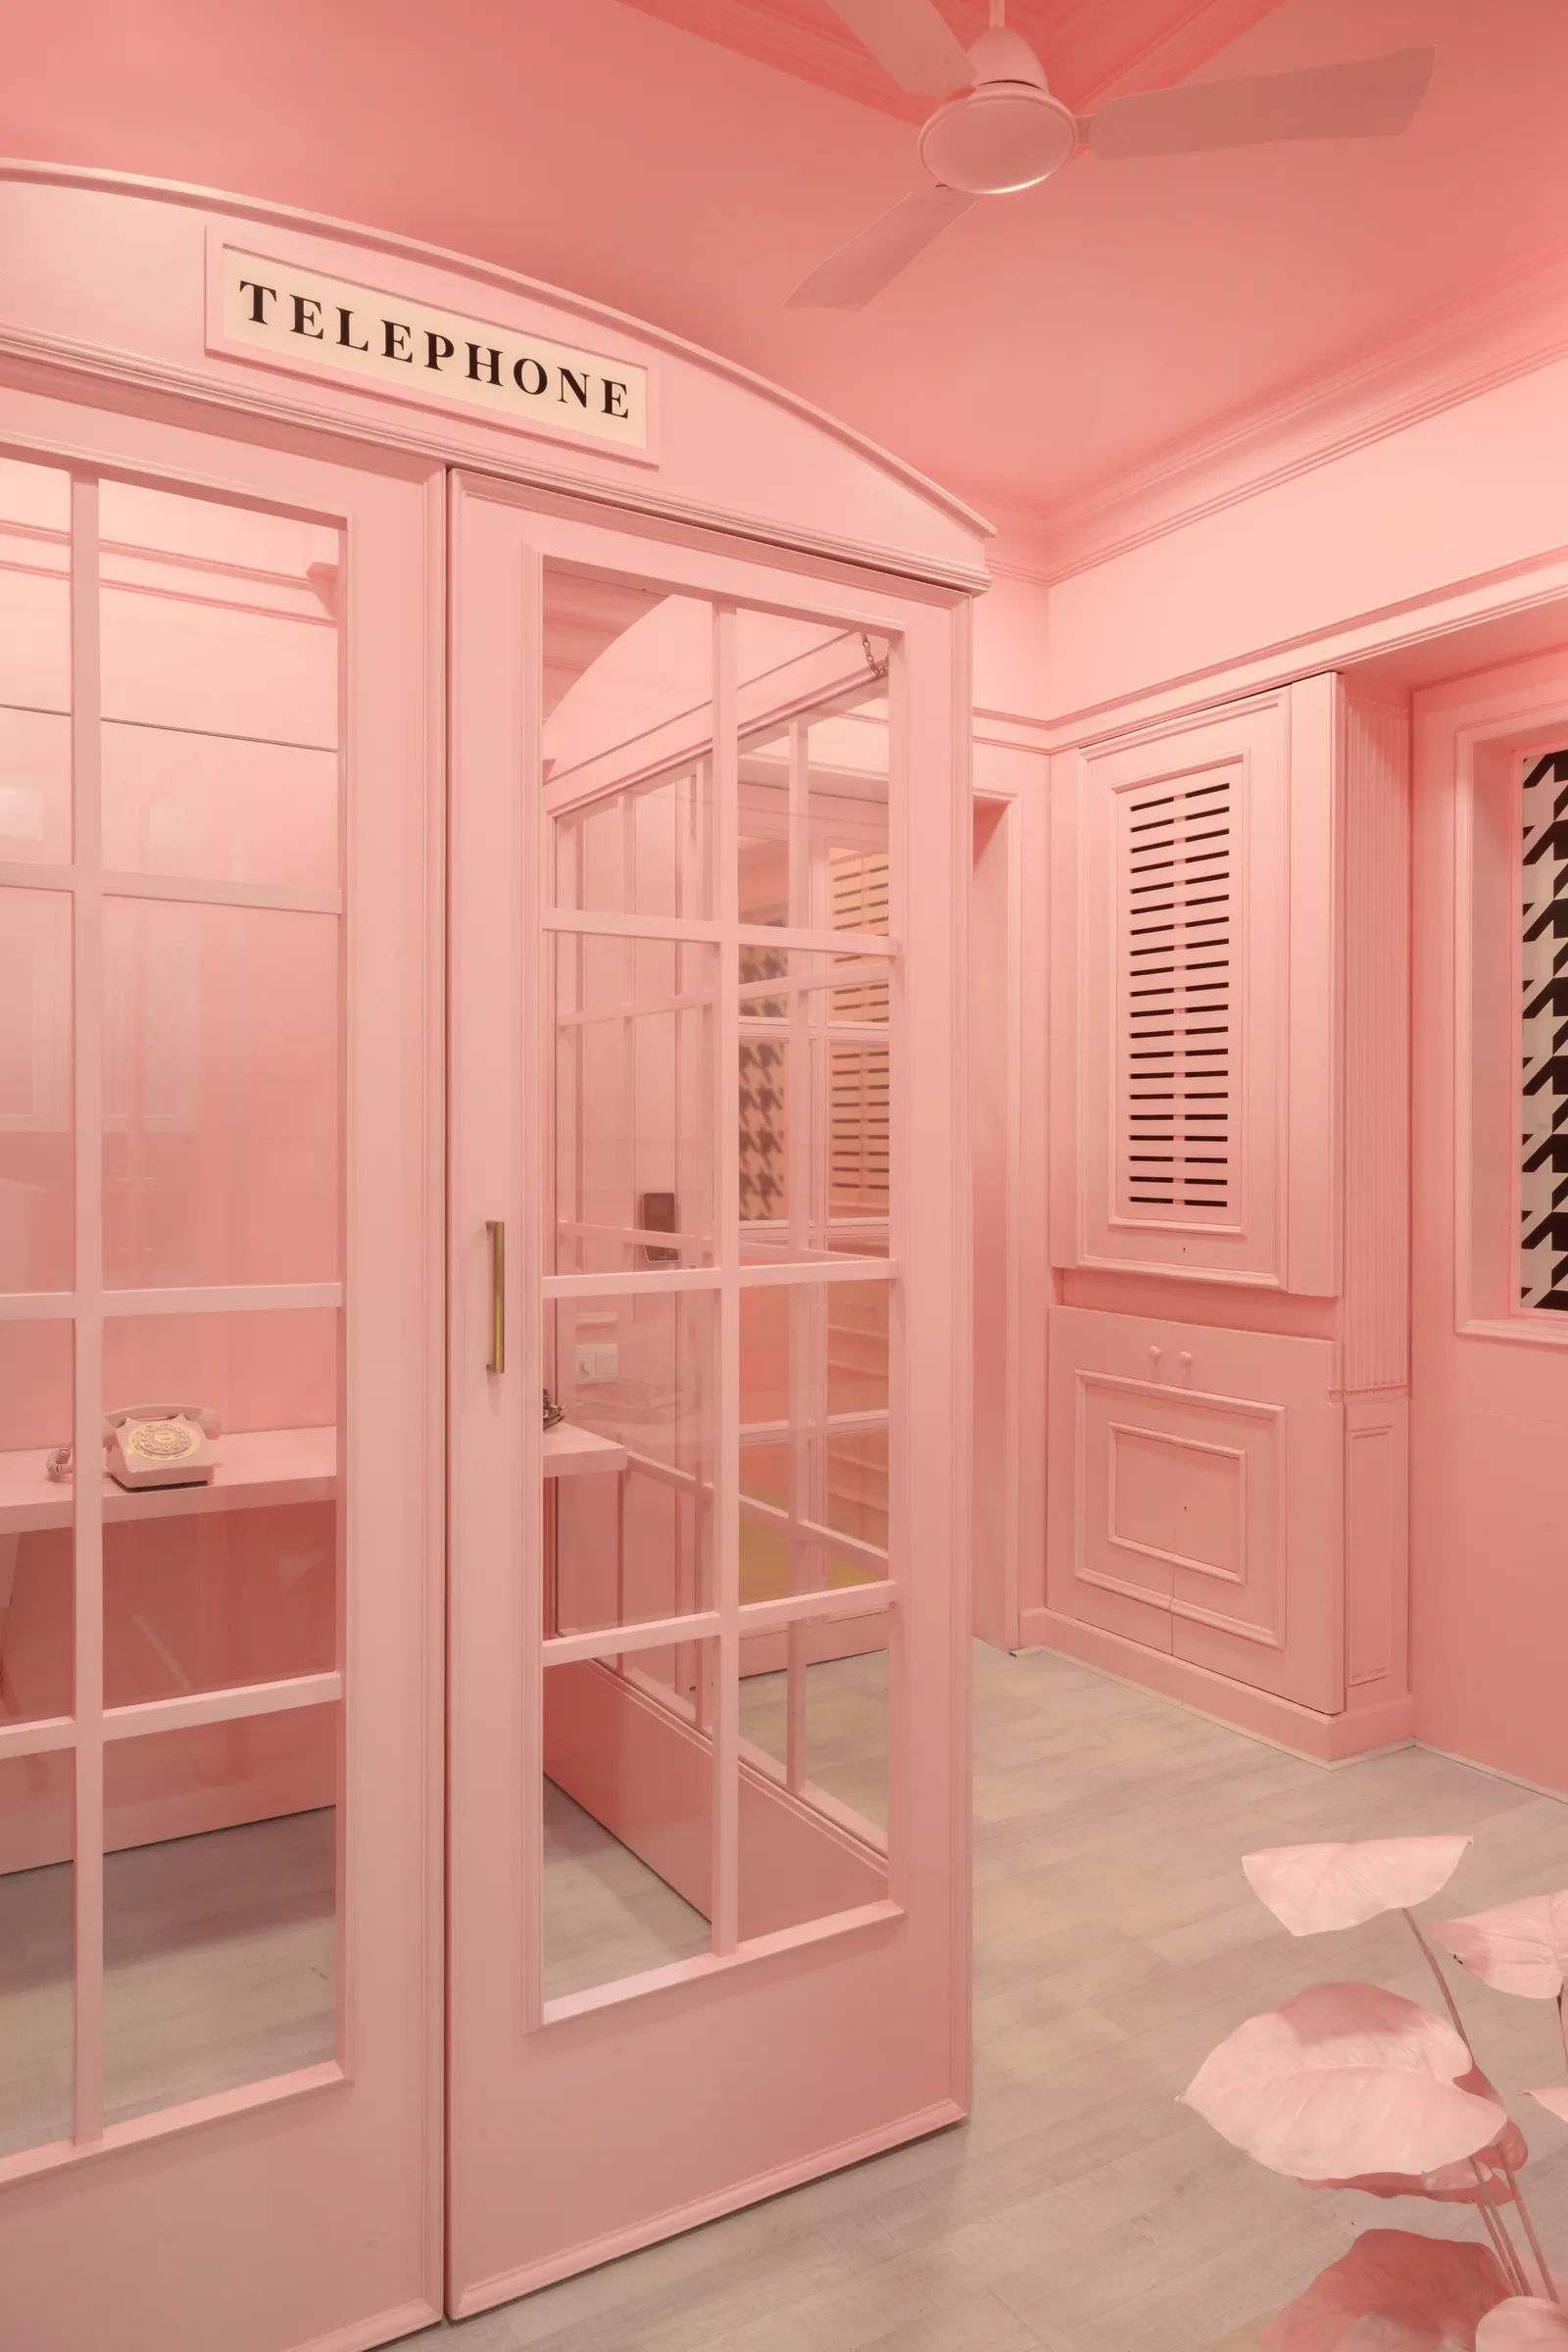 Thiên Bình, dấu hiệu của sự cân bằng và hài hòa, được tô màu hồng. Đó là màu sắc tỏa ra sự ấm áp, tình yêu và sự quyến rũ. Hãy nghĩ về những sắc thái mềm mại và những nét tinh tế. Một chiếc chăn màu hồng hoặc những chiếc đệm màu hồng có thể tạo thêm nét lãng mạn cho phòng khách của bạn. Để có điều gì đó nổi bật hơn, hãy xem xét rèm cửa màu hồng hoặc bức tường màu hồng trong phòng ngủ của bạn.